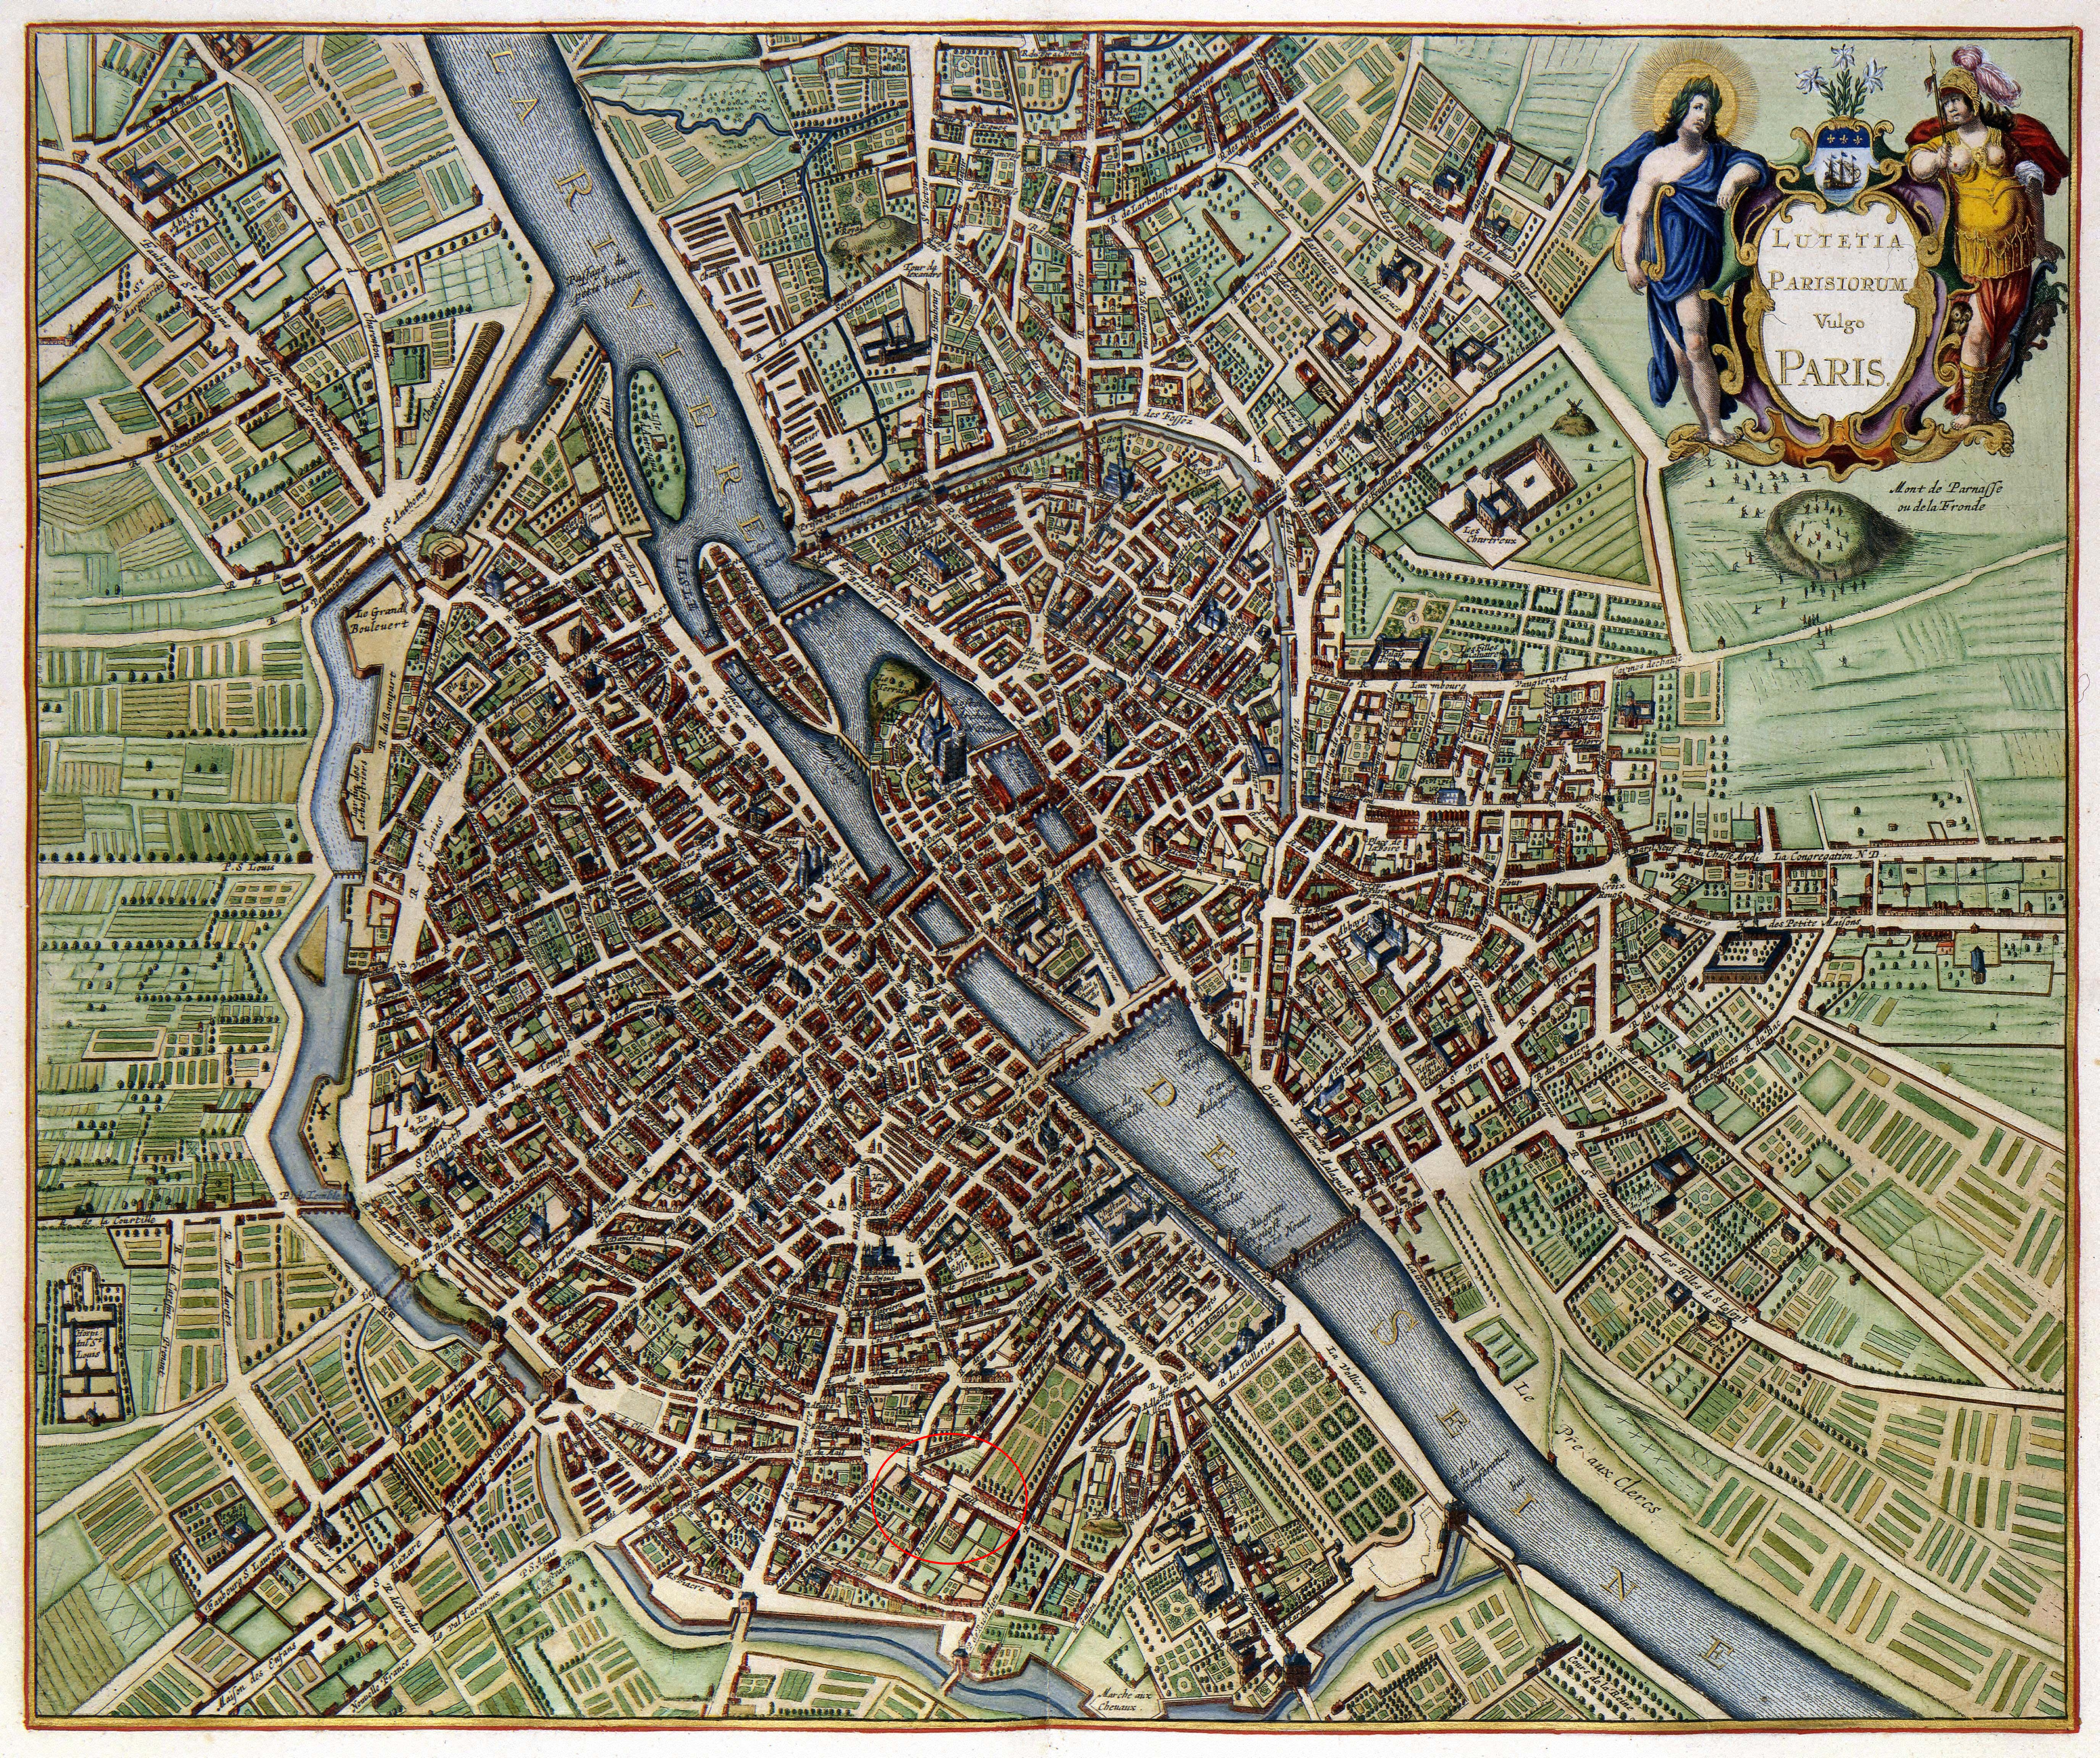 Paris en 1657Plan de Janssonius (publié en 1657 et dessiné entre 1638 et 1652).
La rue du Mail a été cerclée en rouge. On peut aussi voir la rue des Orties au Louvre. Attention le nord est plutôt en bas !